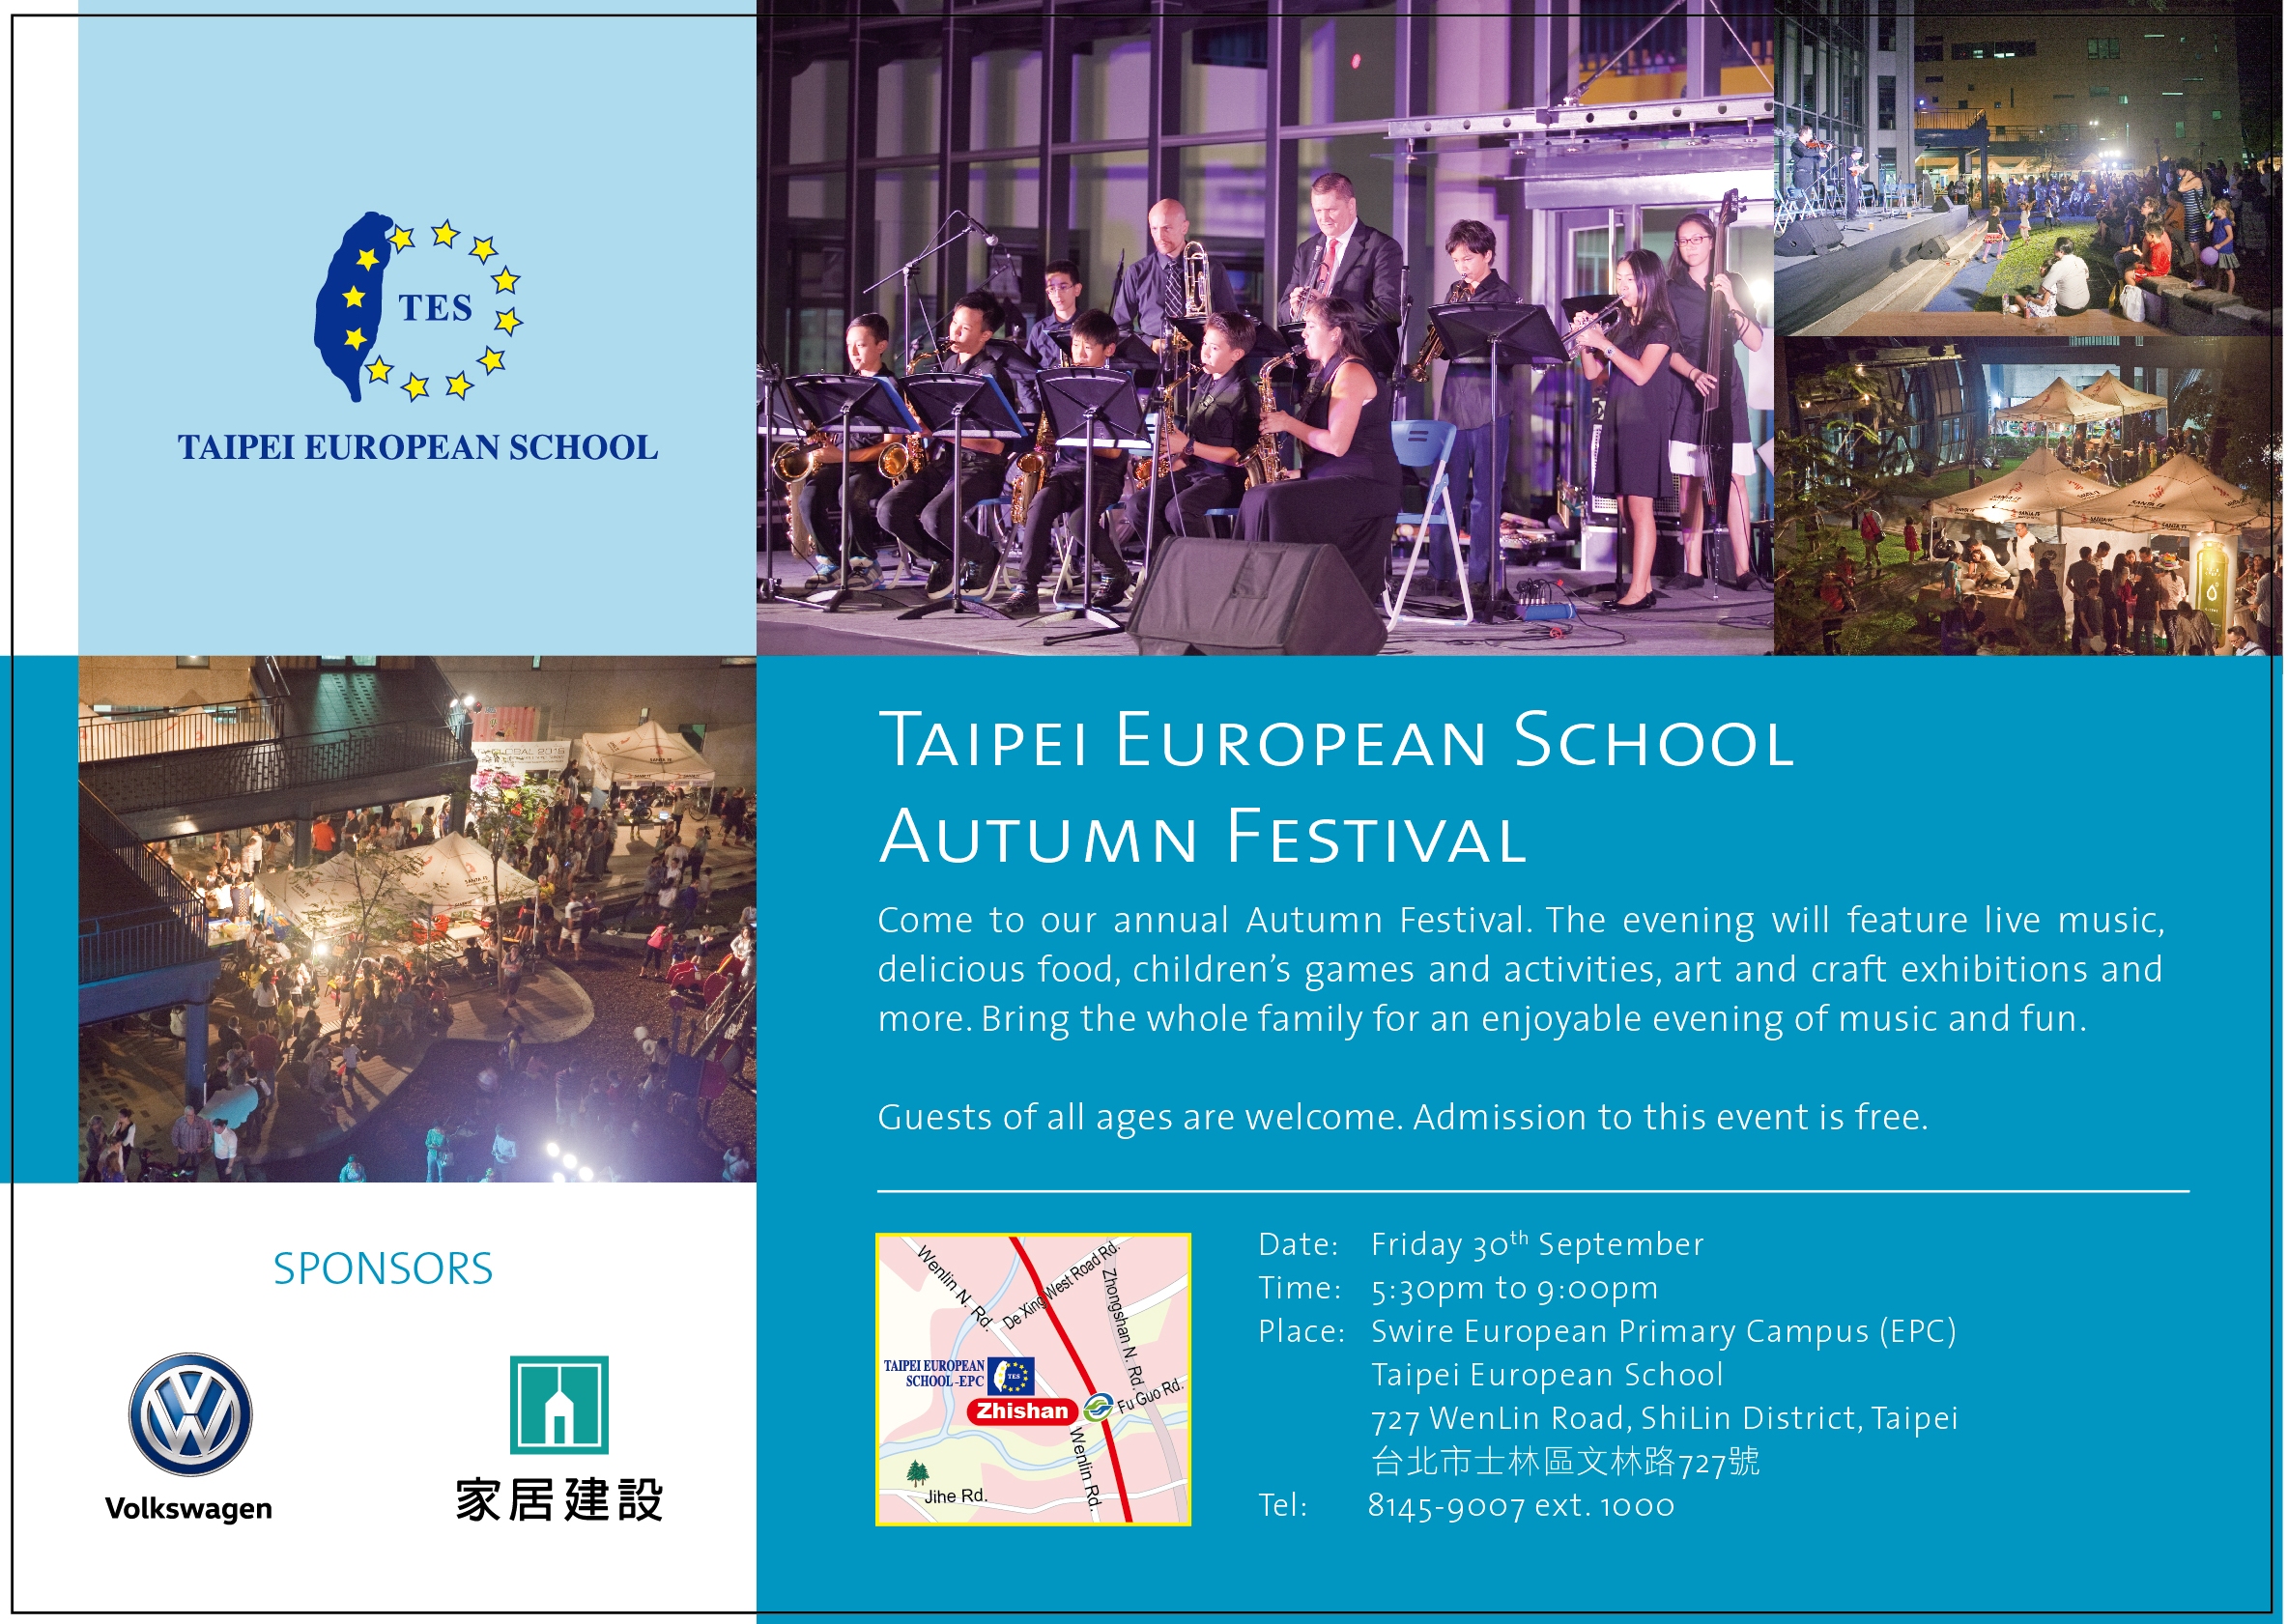 2016 Taipei European School Autumn Festival on 9/30 5:30 p.m. to 9 p.m.